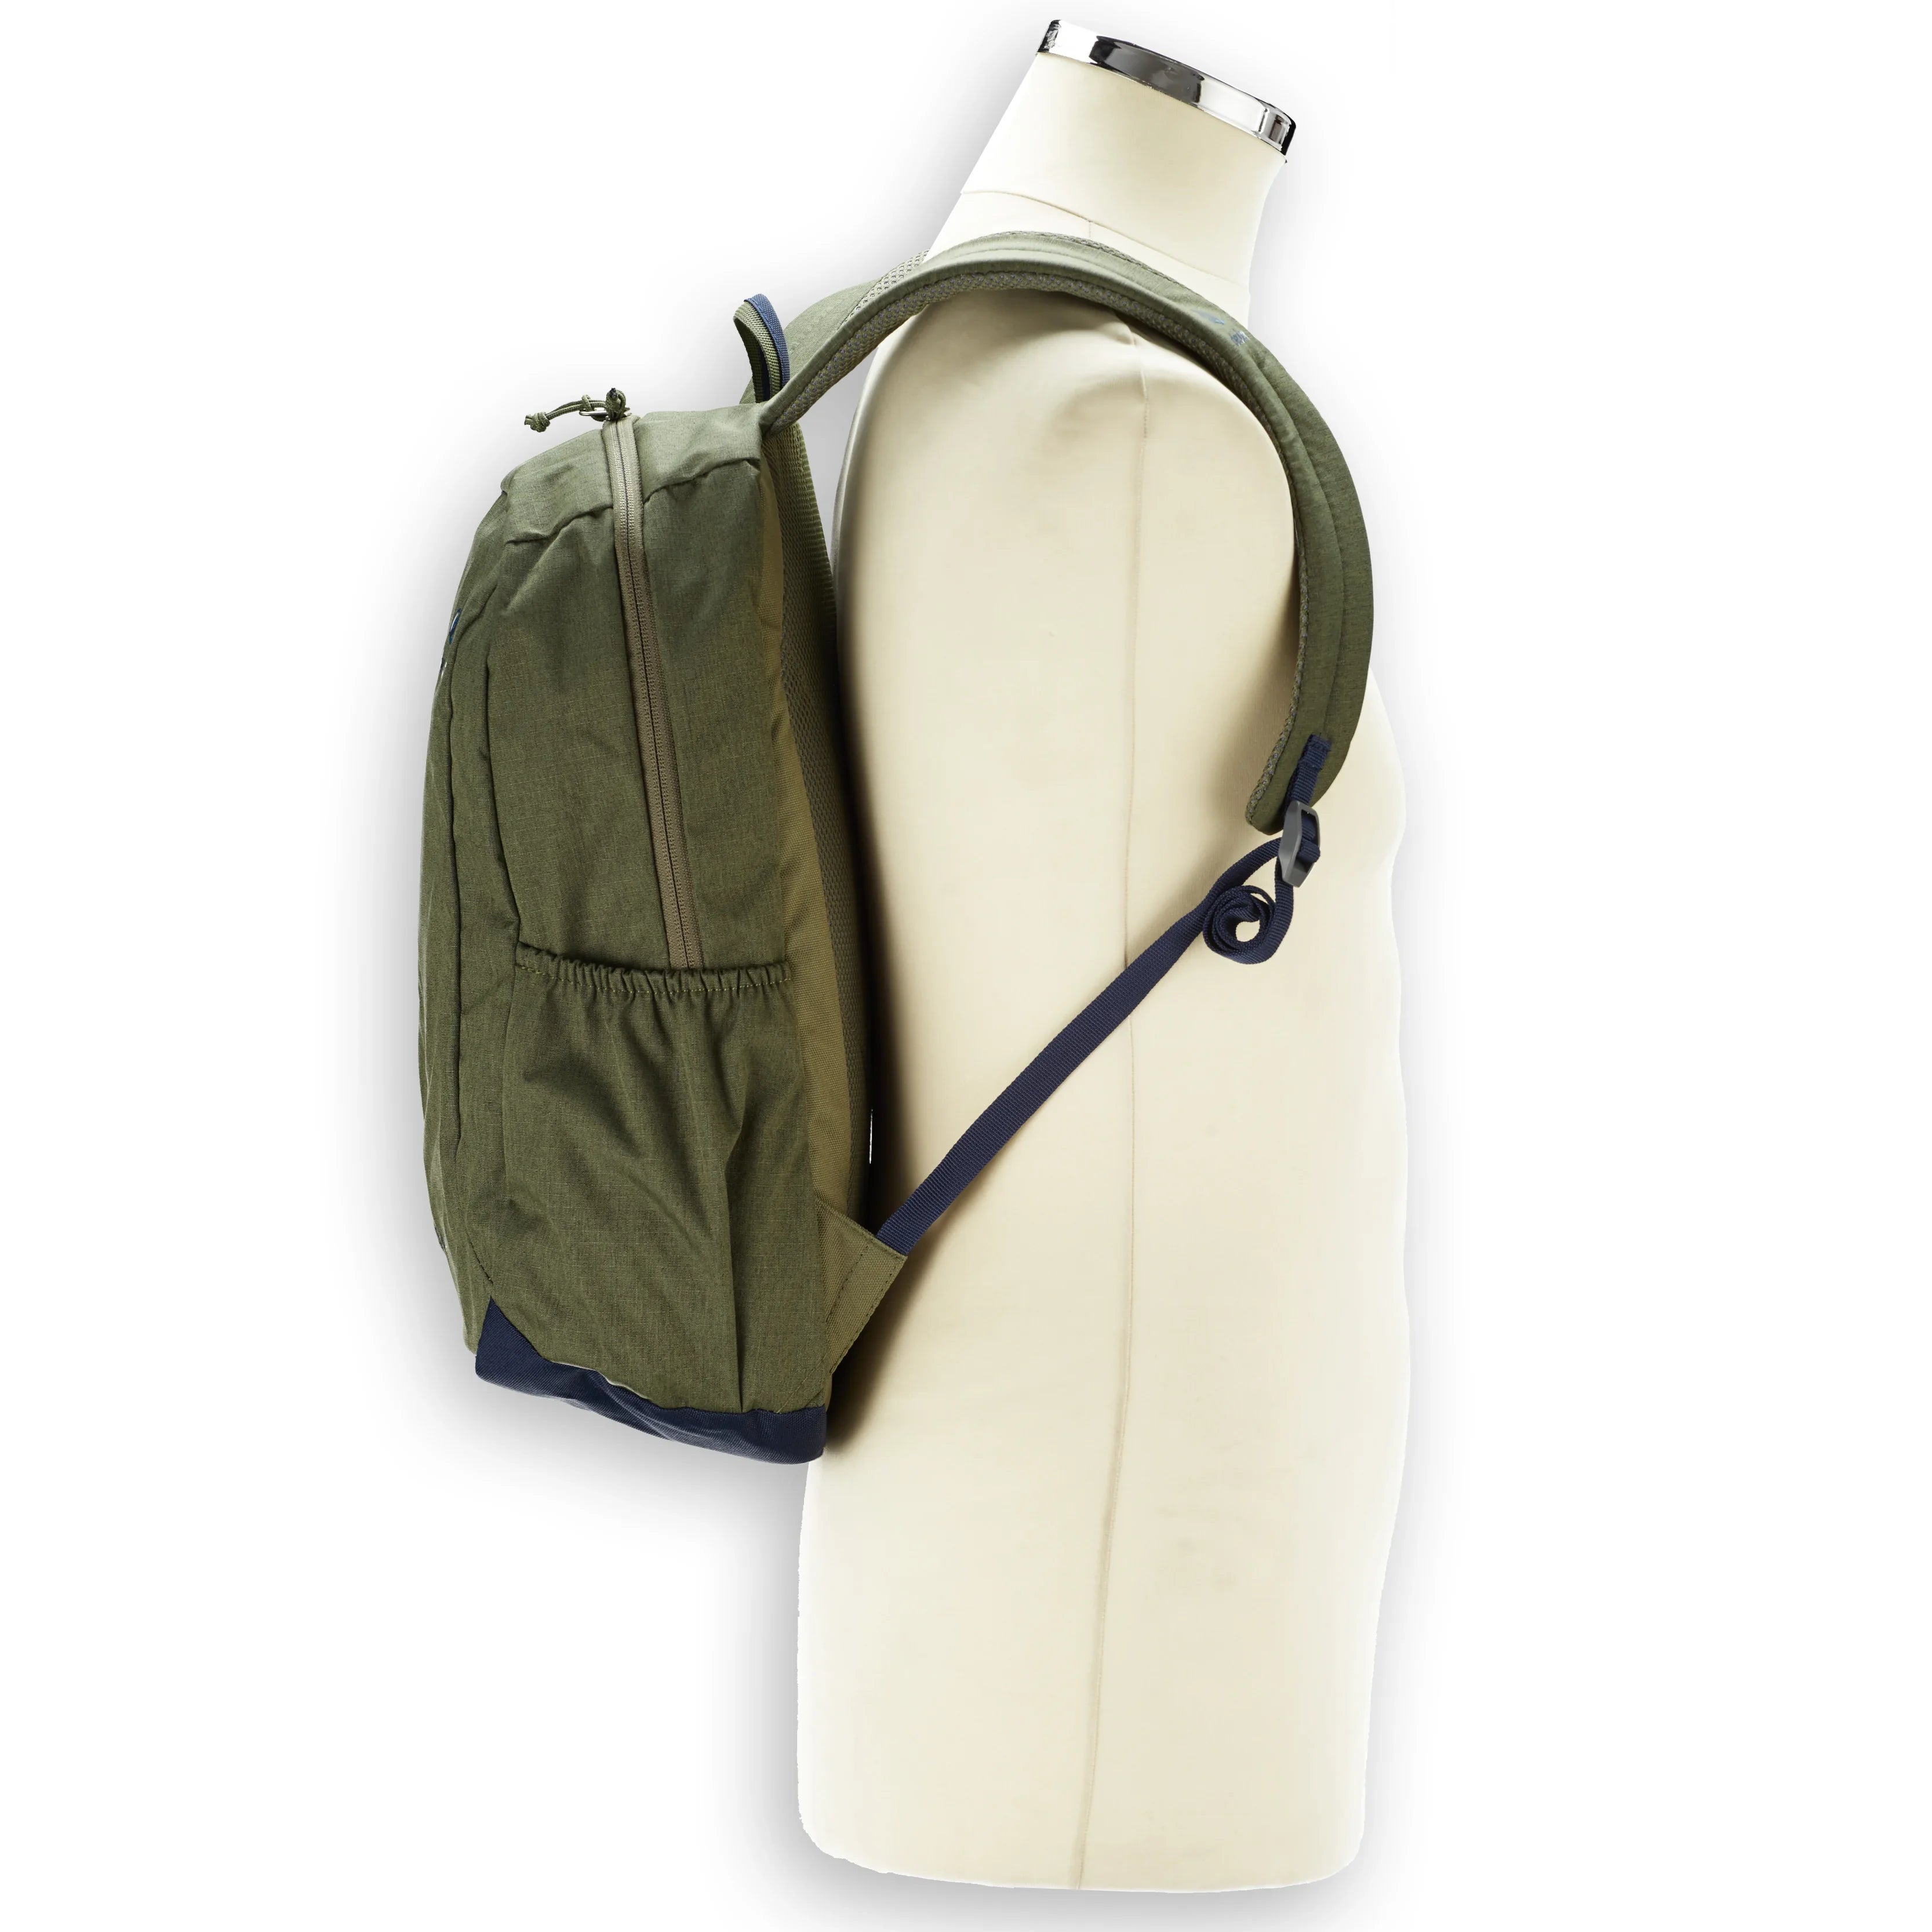 Deuter Daypack Vista Skip Backpack 42 cm - frost-aloe